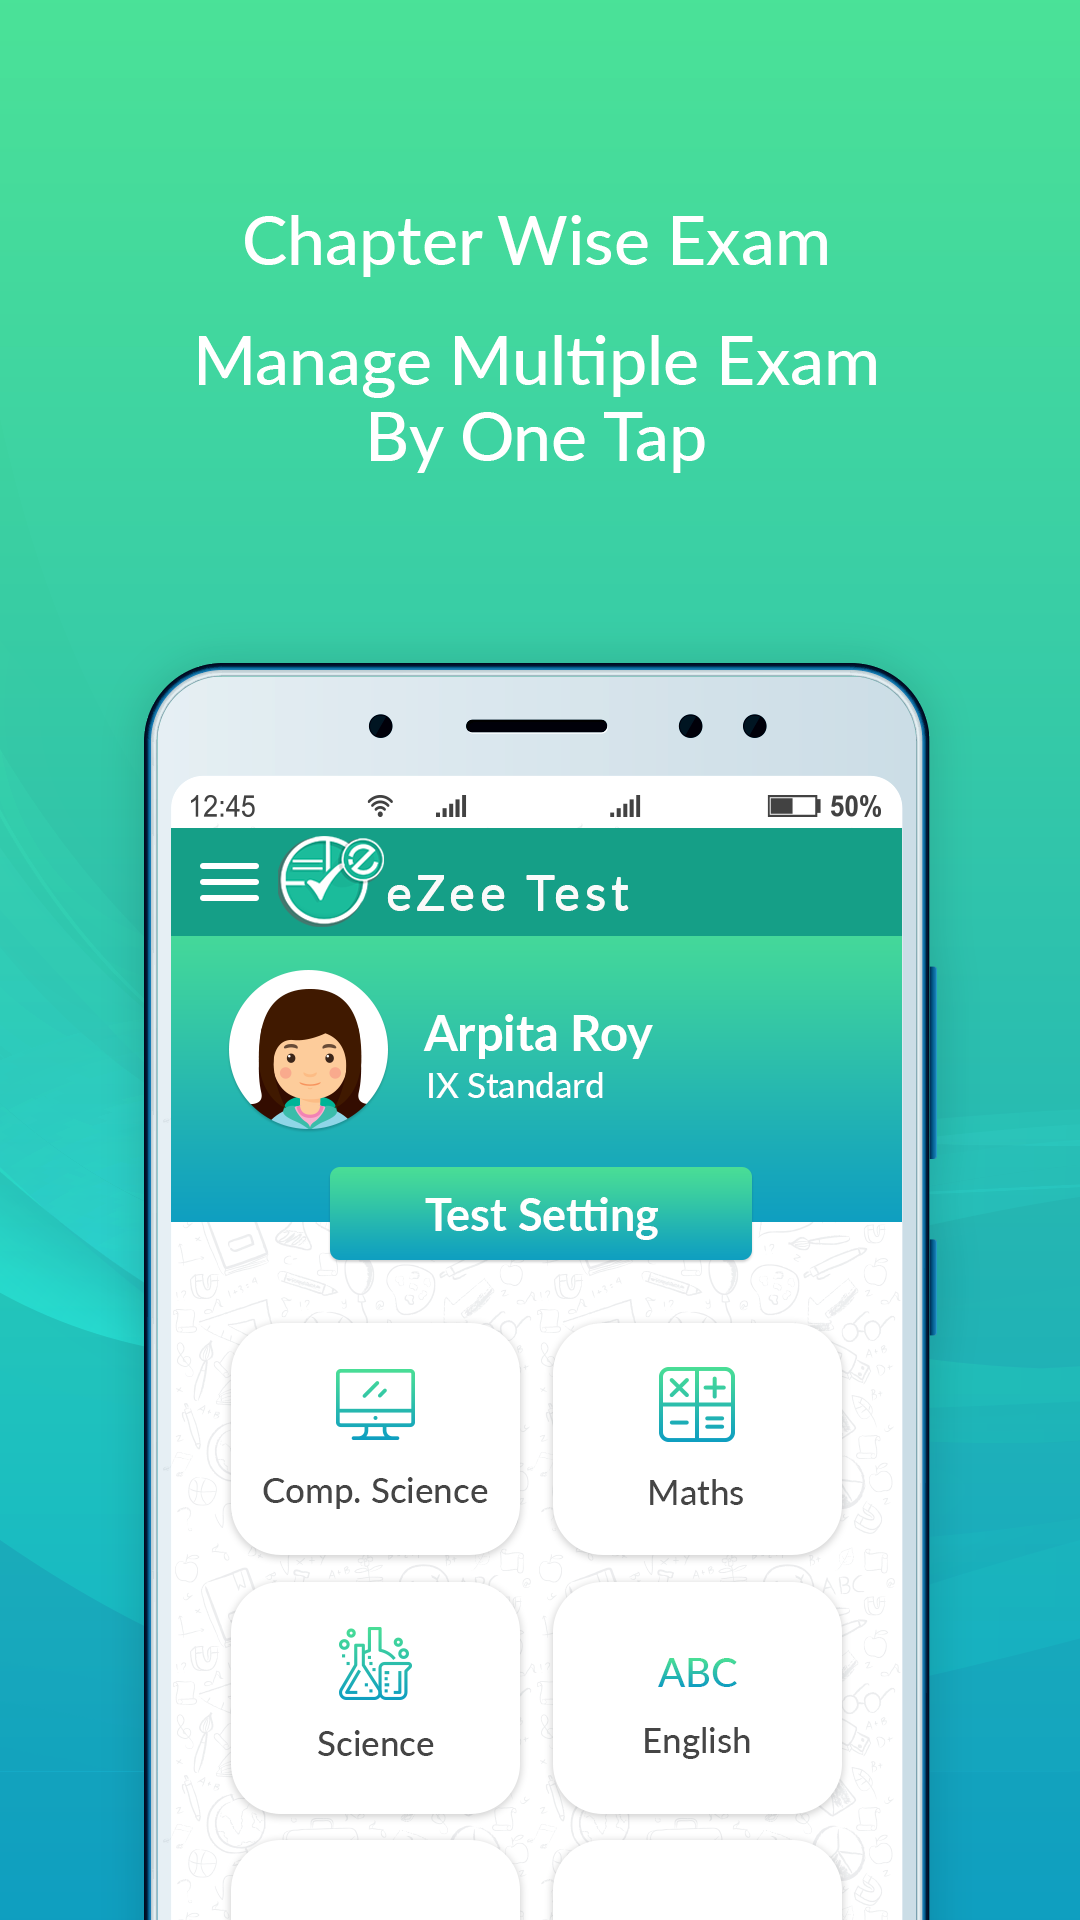 eZee Test Exam-preparation, Online Test Series App